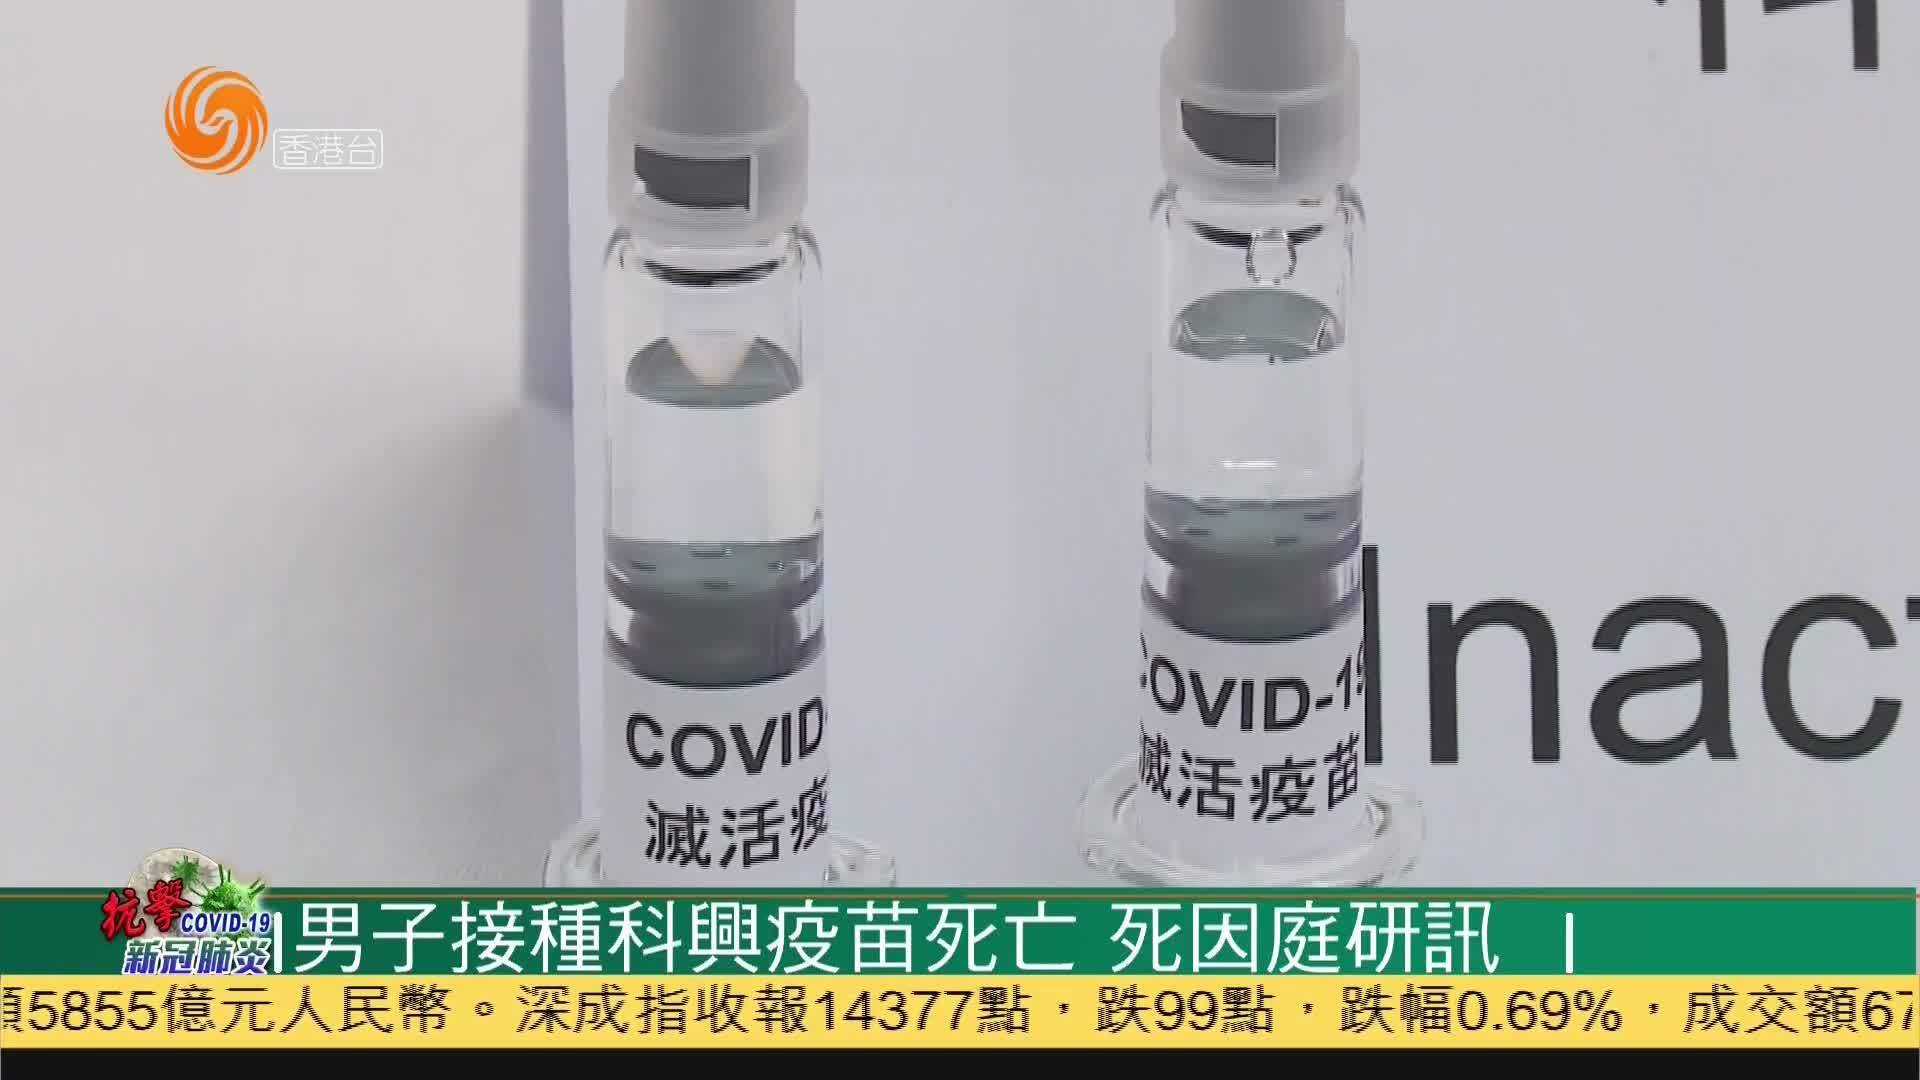 新加坡允许引进科兴疫苗 当地民众称赞_新闻频道_央视网(cctv.com)